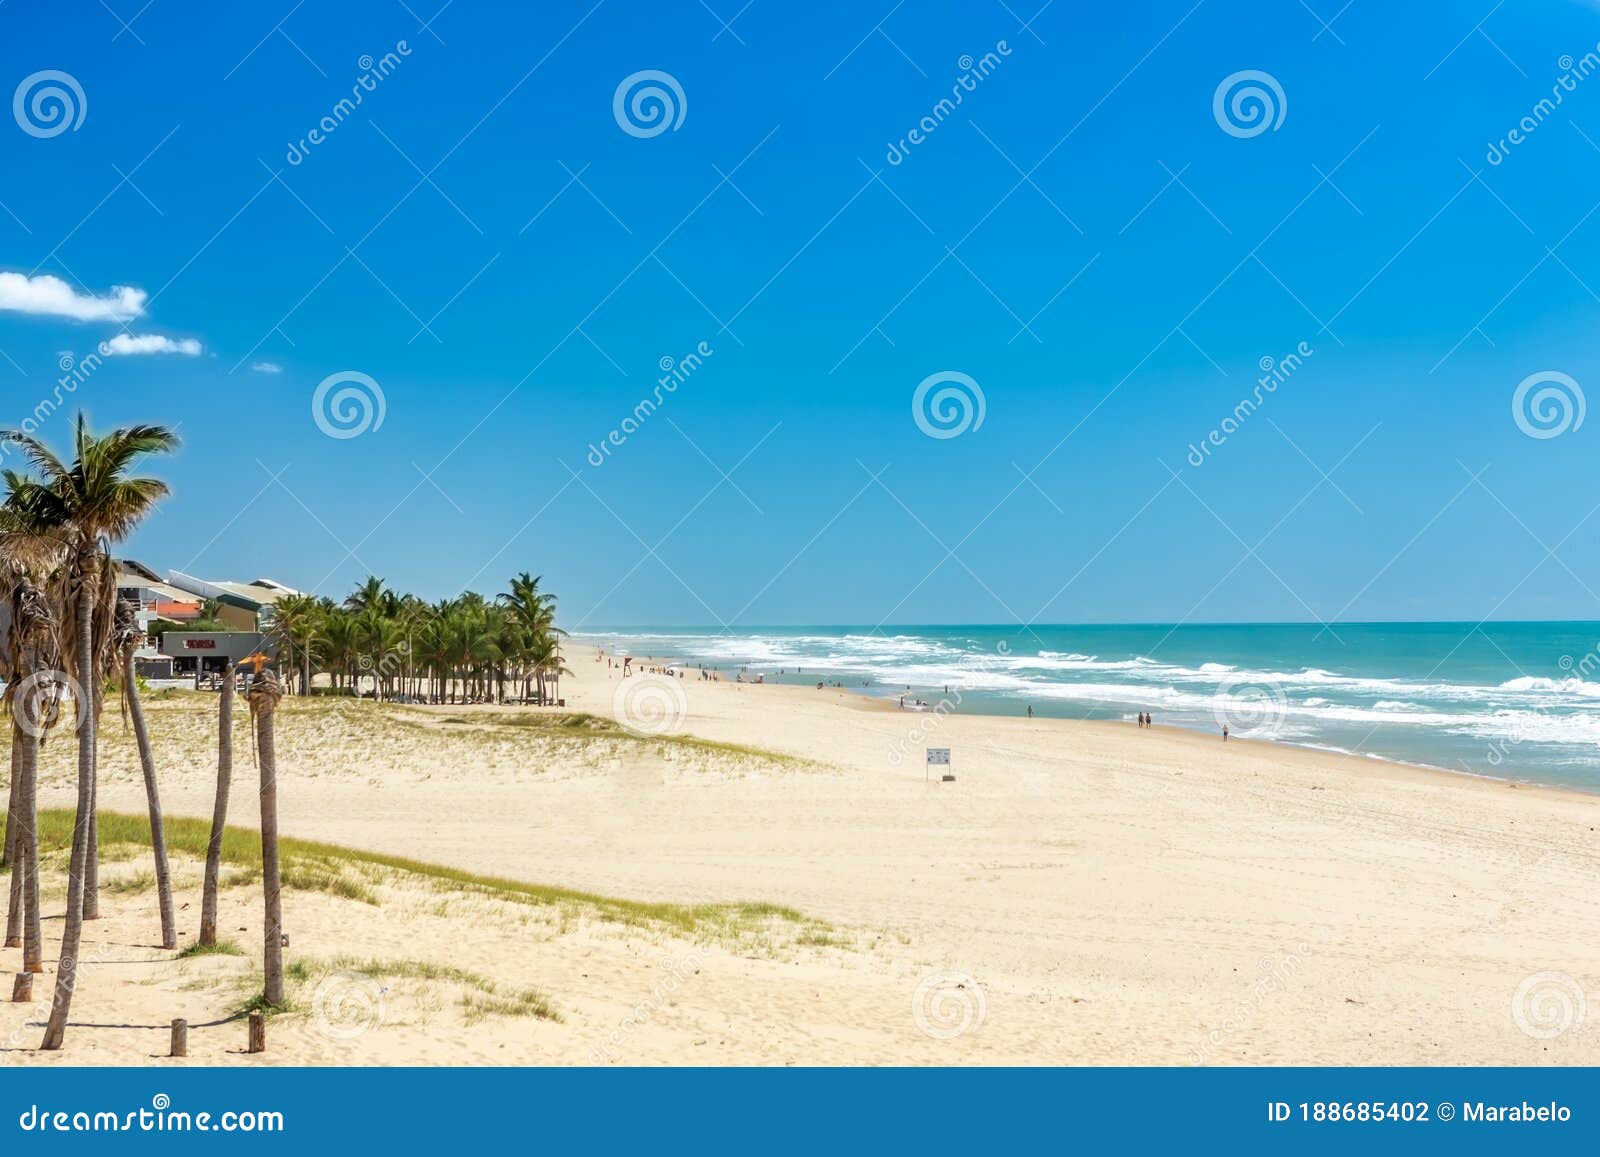 porto das dunas beach at the aquiraz district in fortaleza, brazil